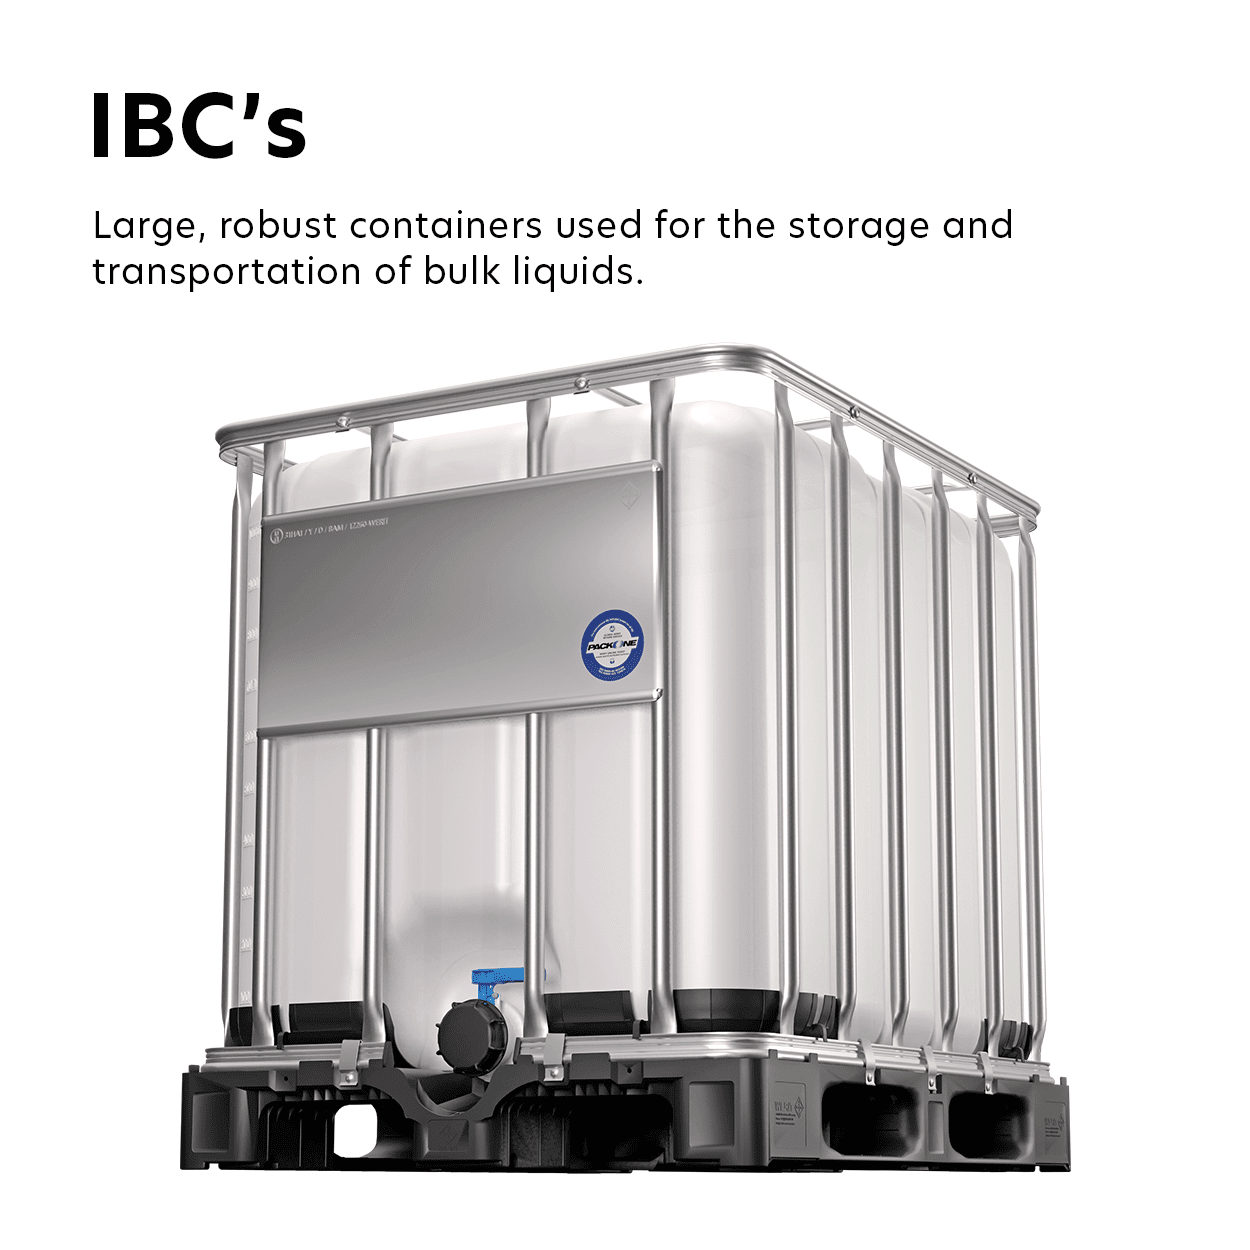 IBC's